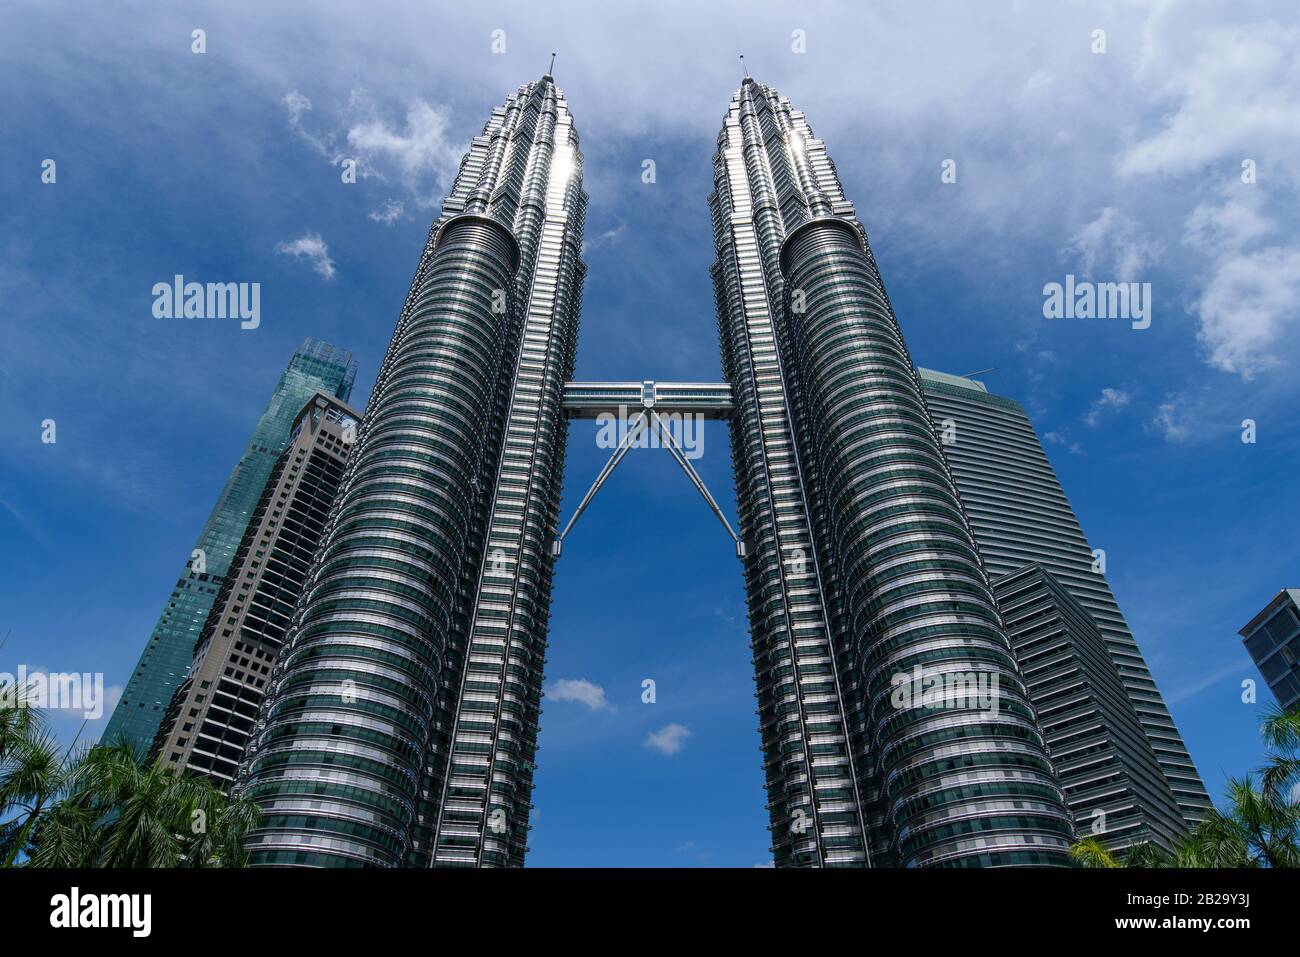 Petronas Twin Towers, i più famosi grattacieli gemelli di Kuala Lumpur, Malesia Foto Stock